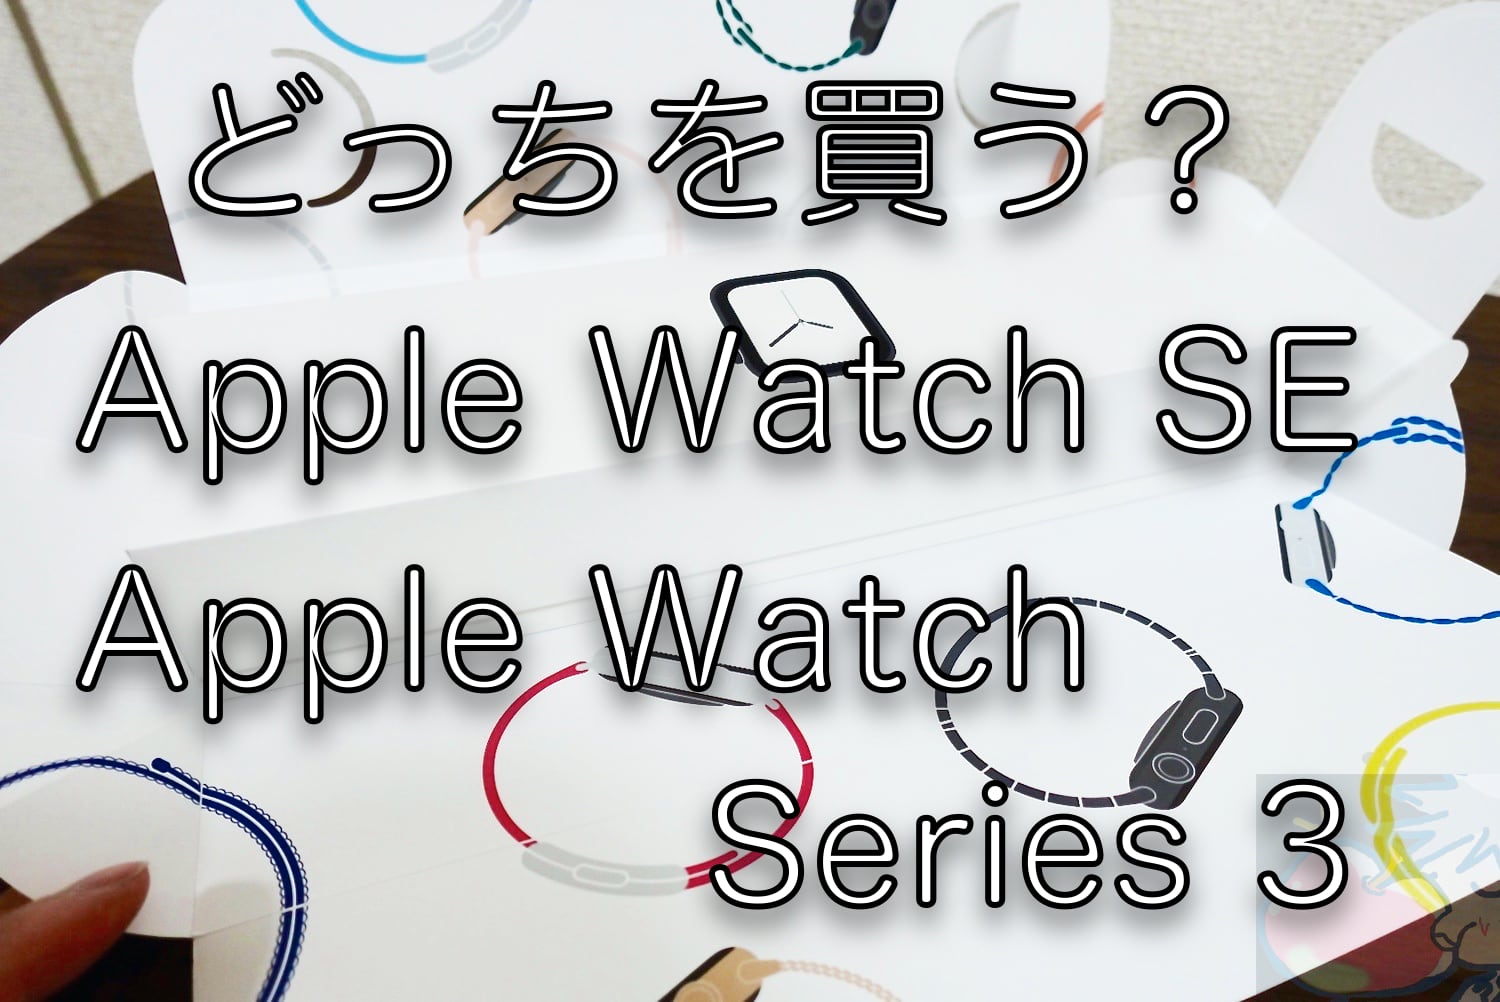 どっちを買う？Apple Watch SE or Apple Watch Series 3？